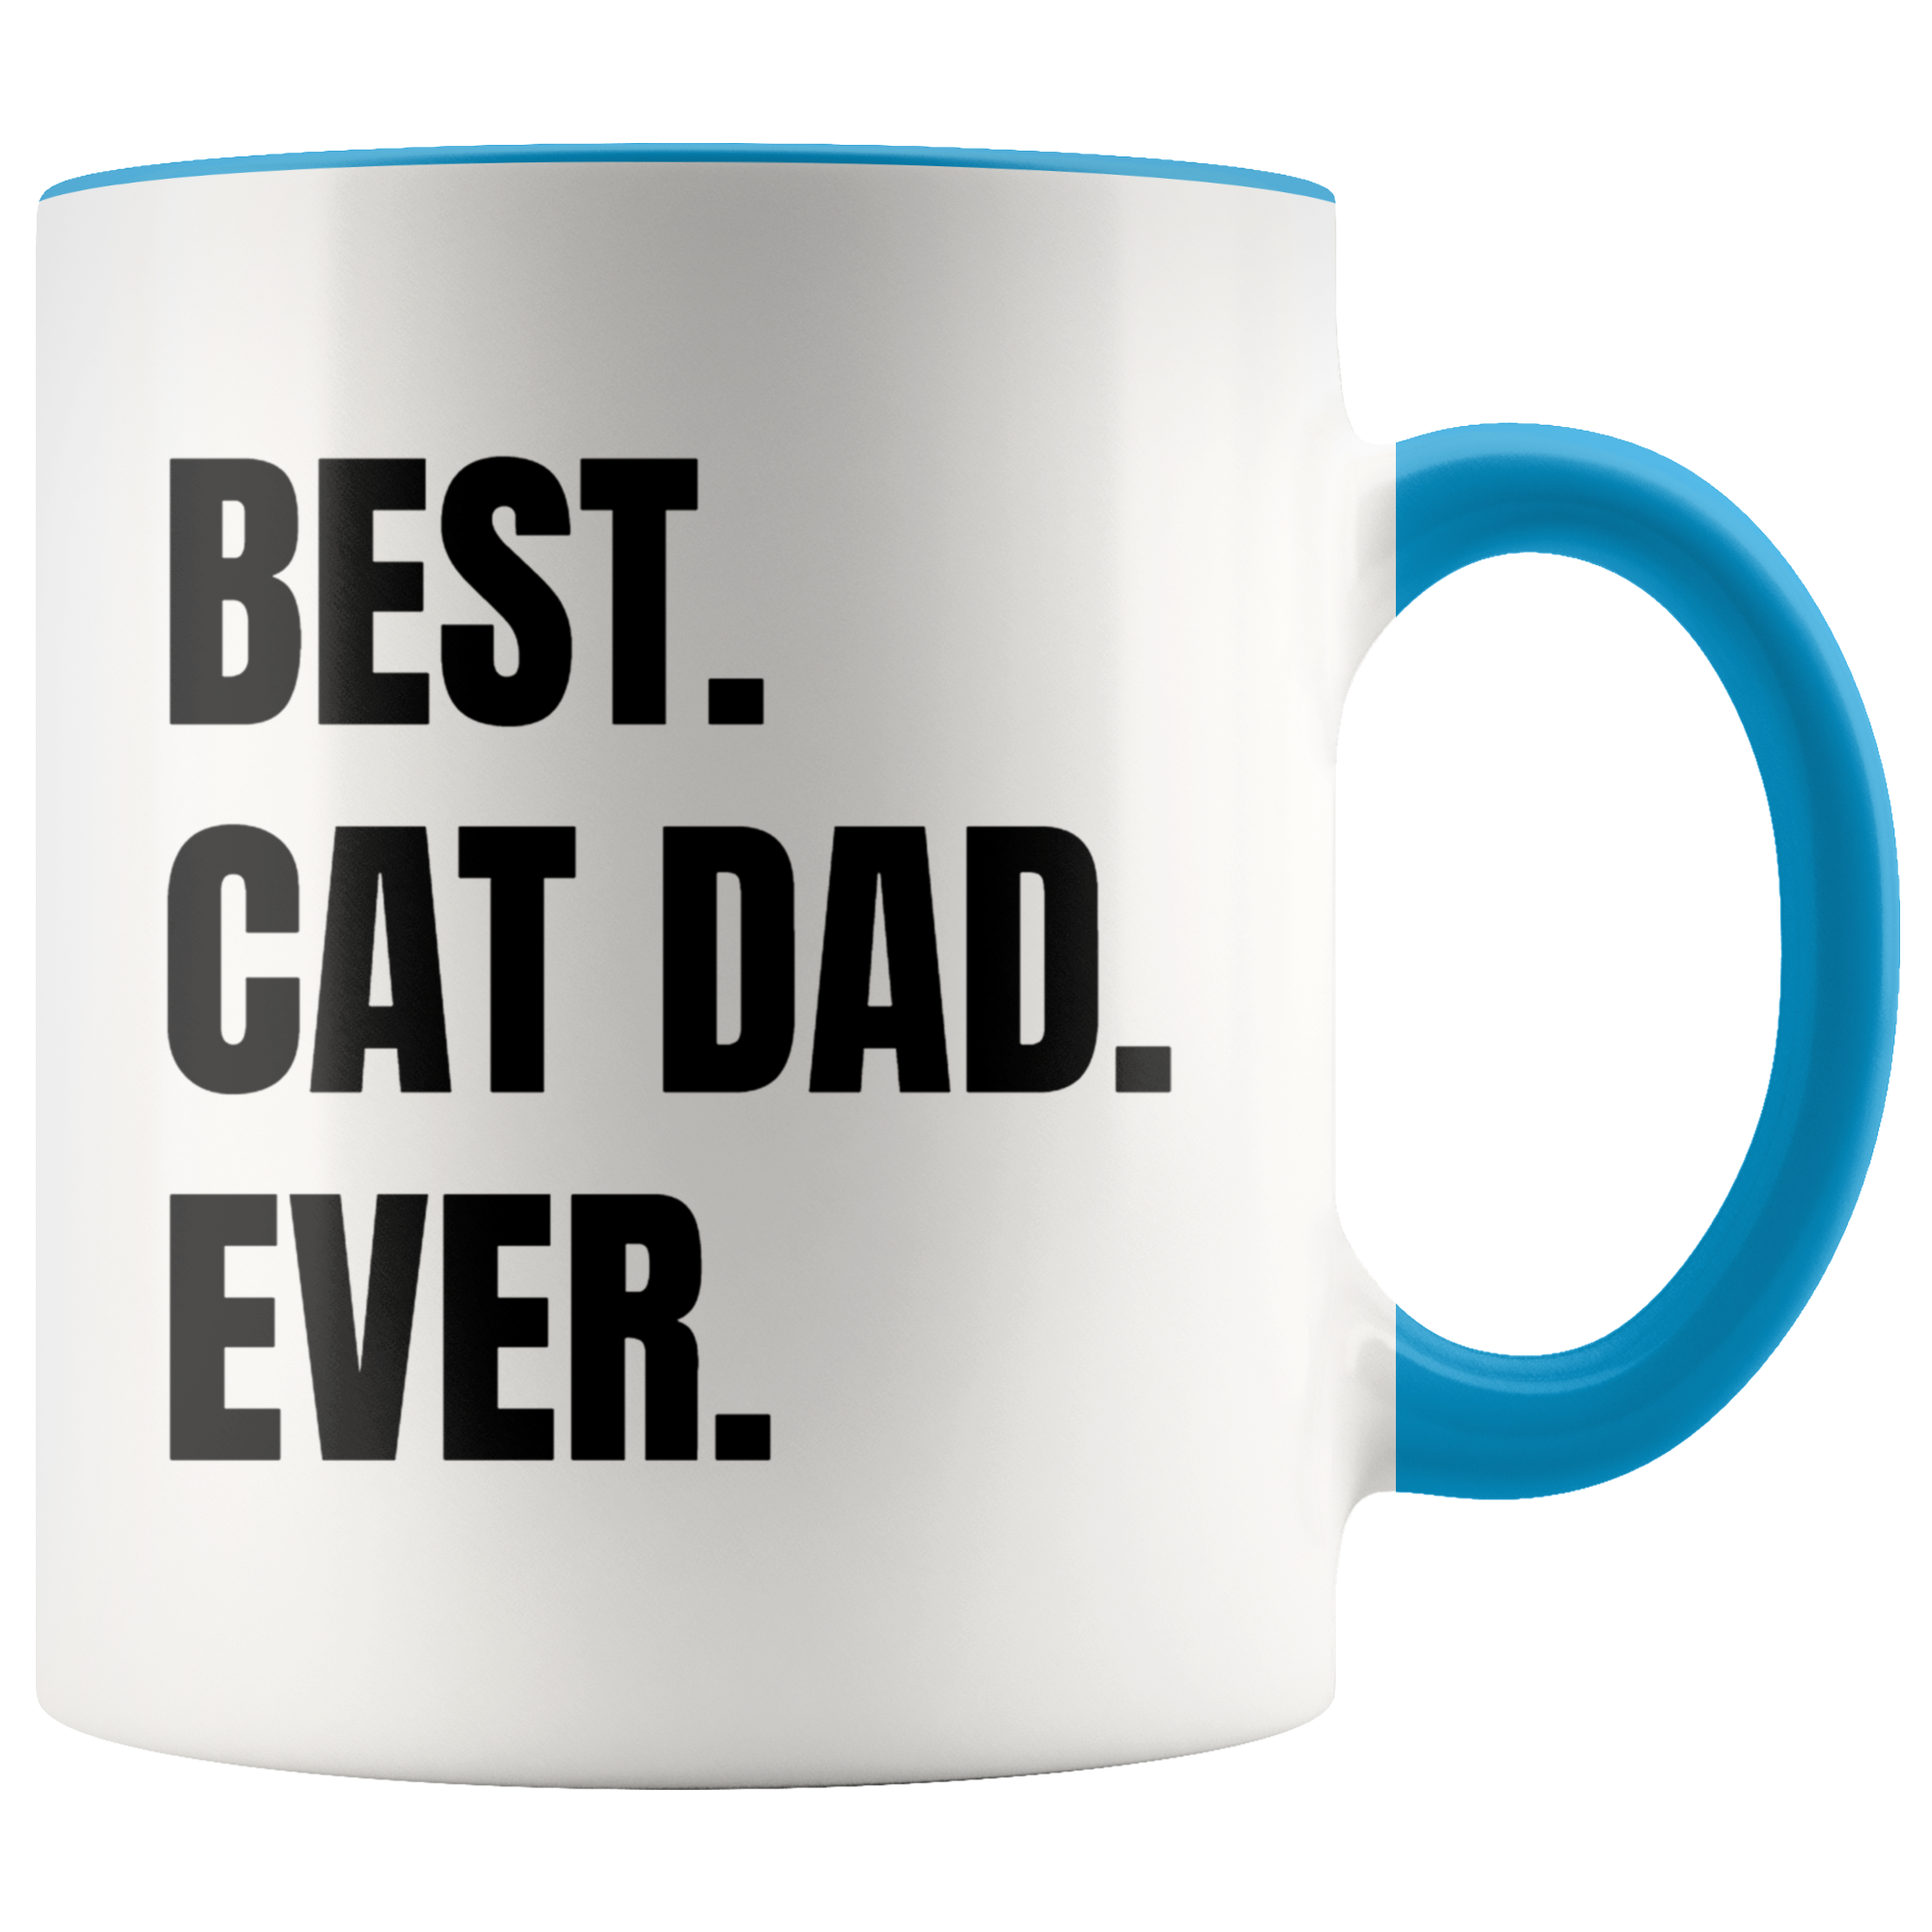 Best Cat Dad Ever Mug